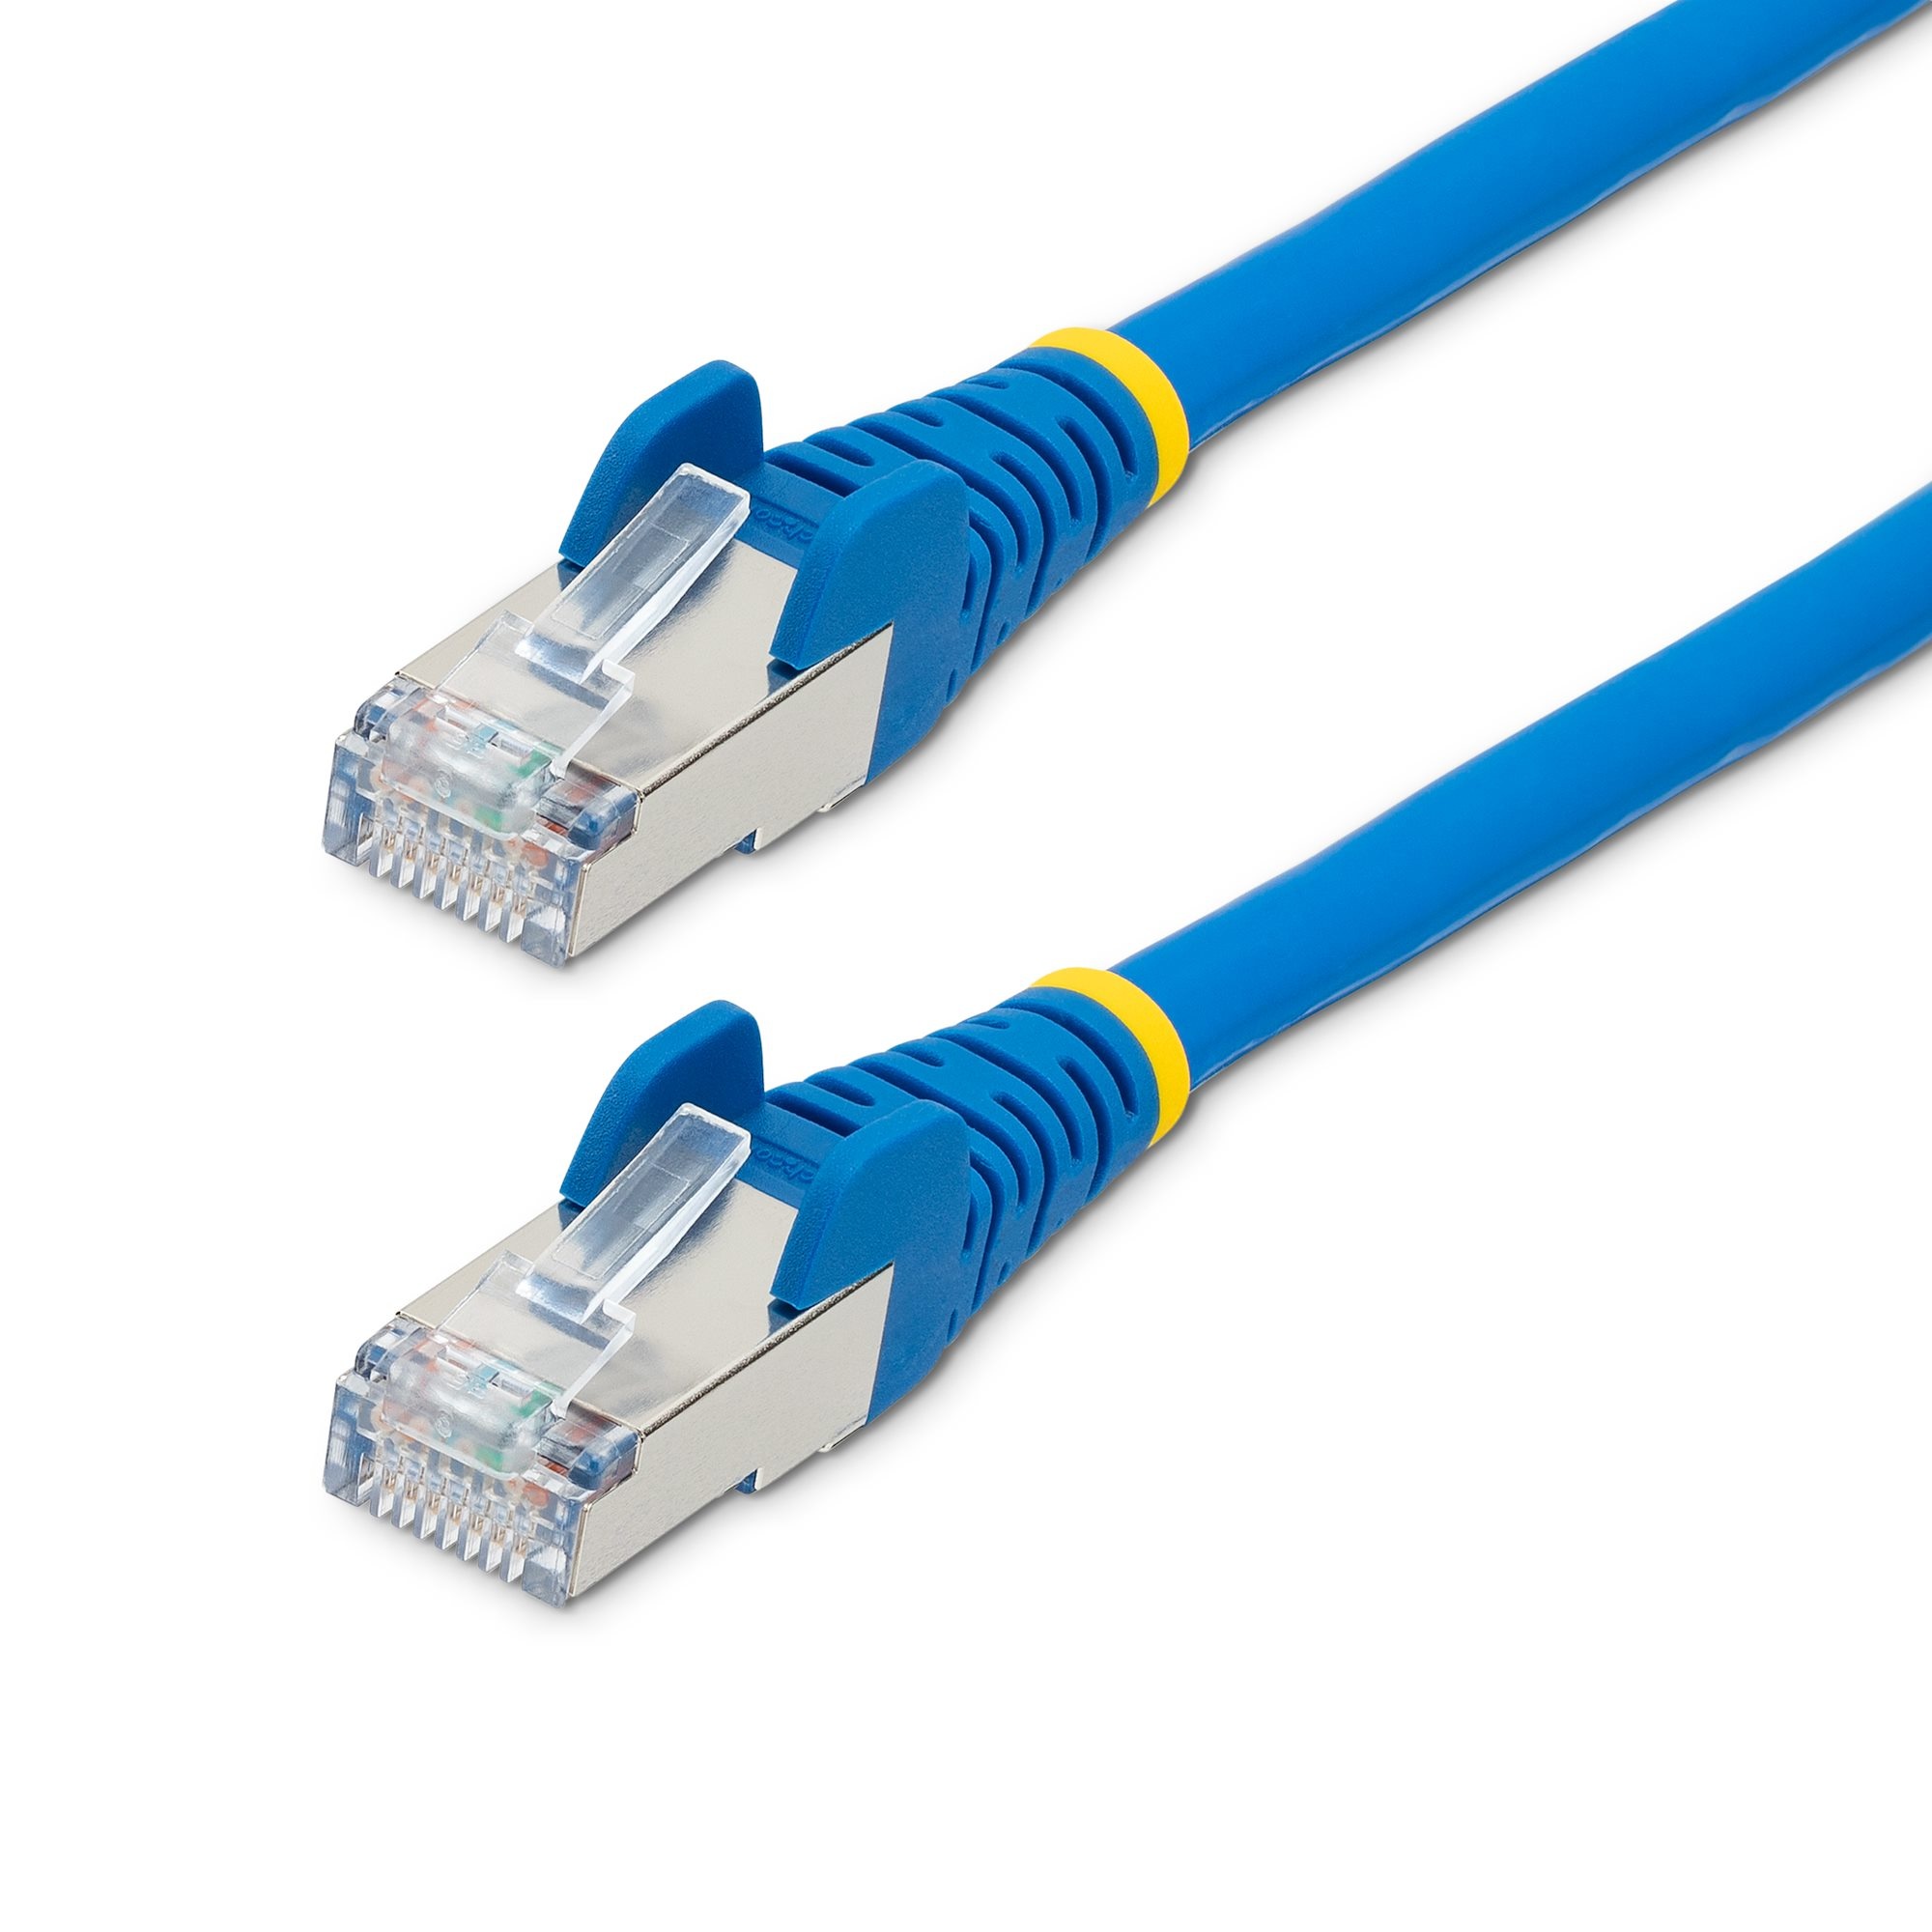 1m LSZH CAT6a Ethernet Cable - Blue thumbnail